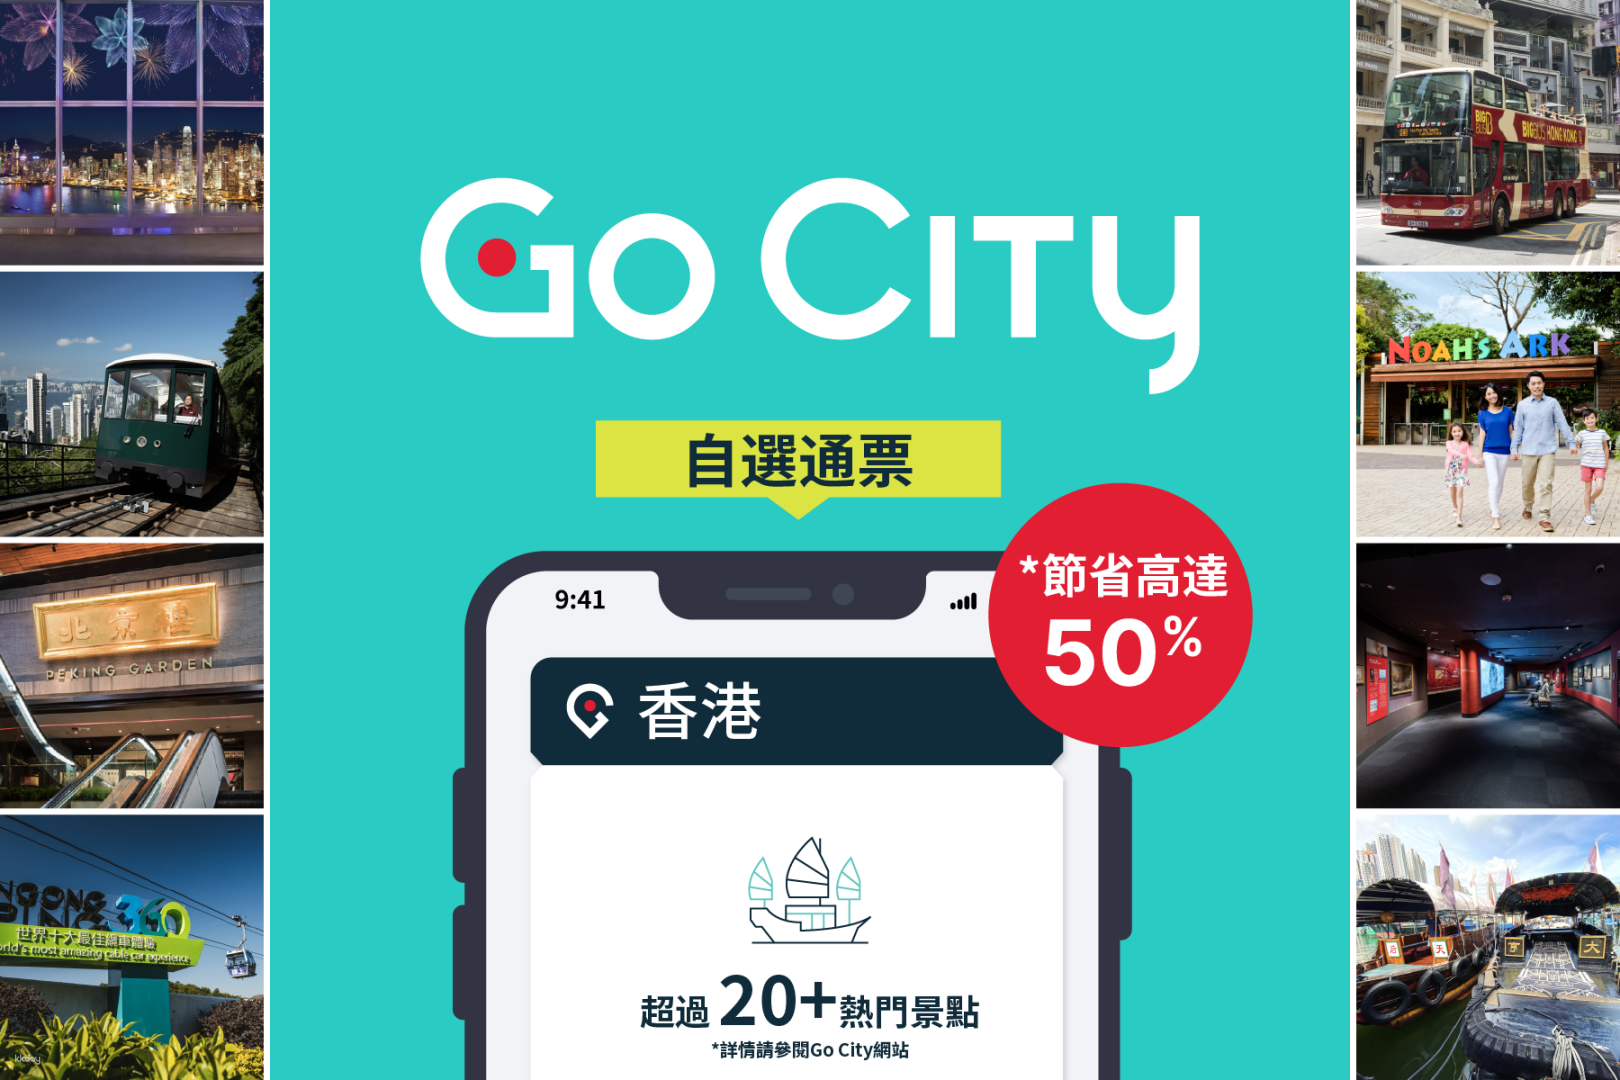 香港-Go City| 香港自選通行證| 自選多個景點